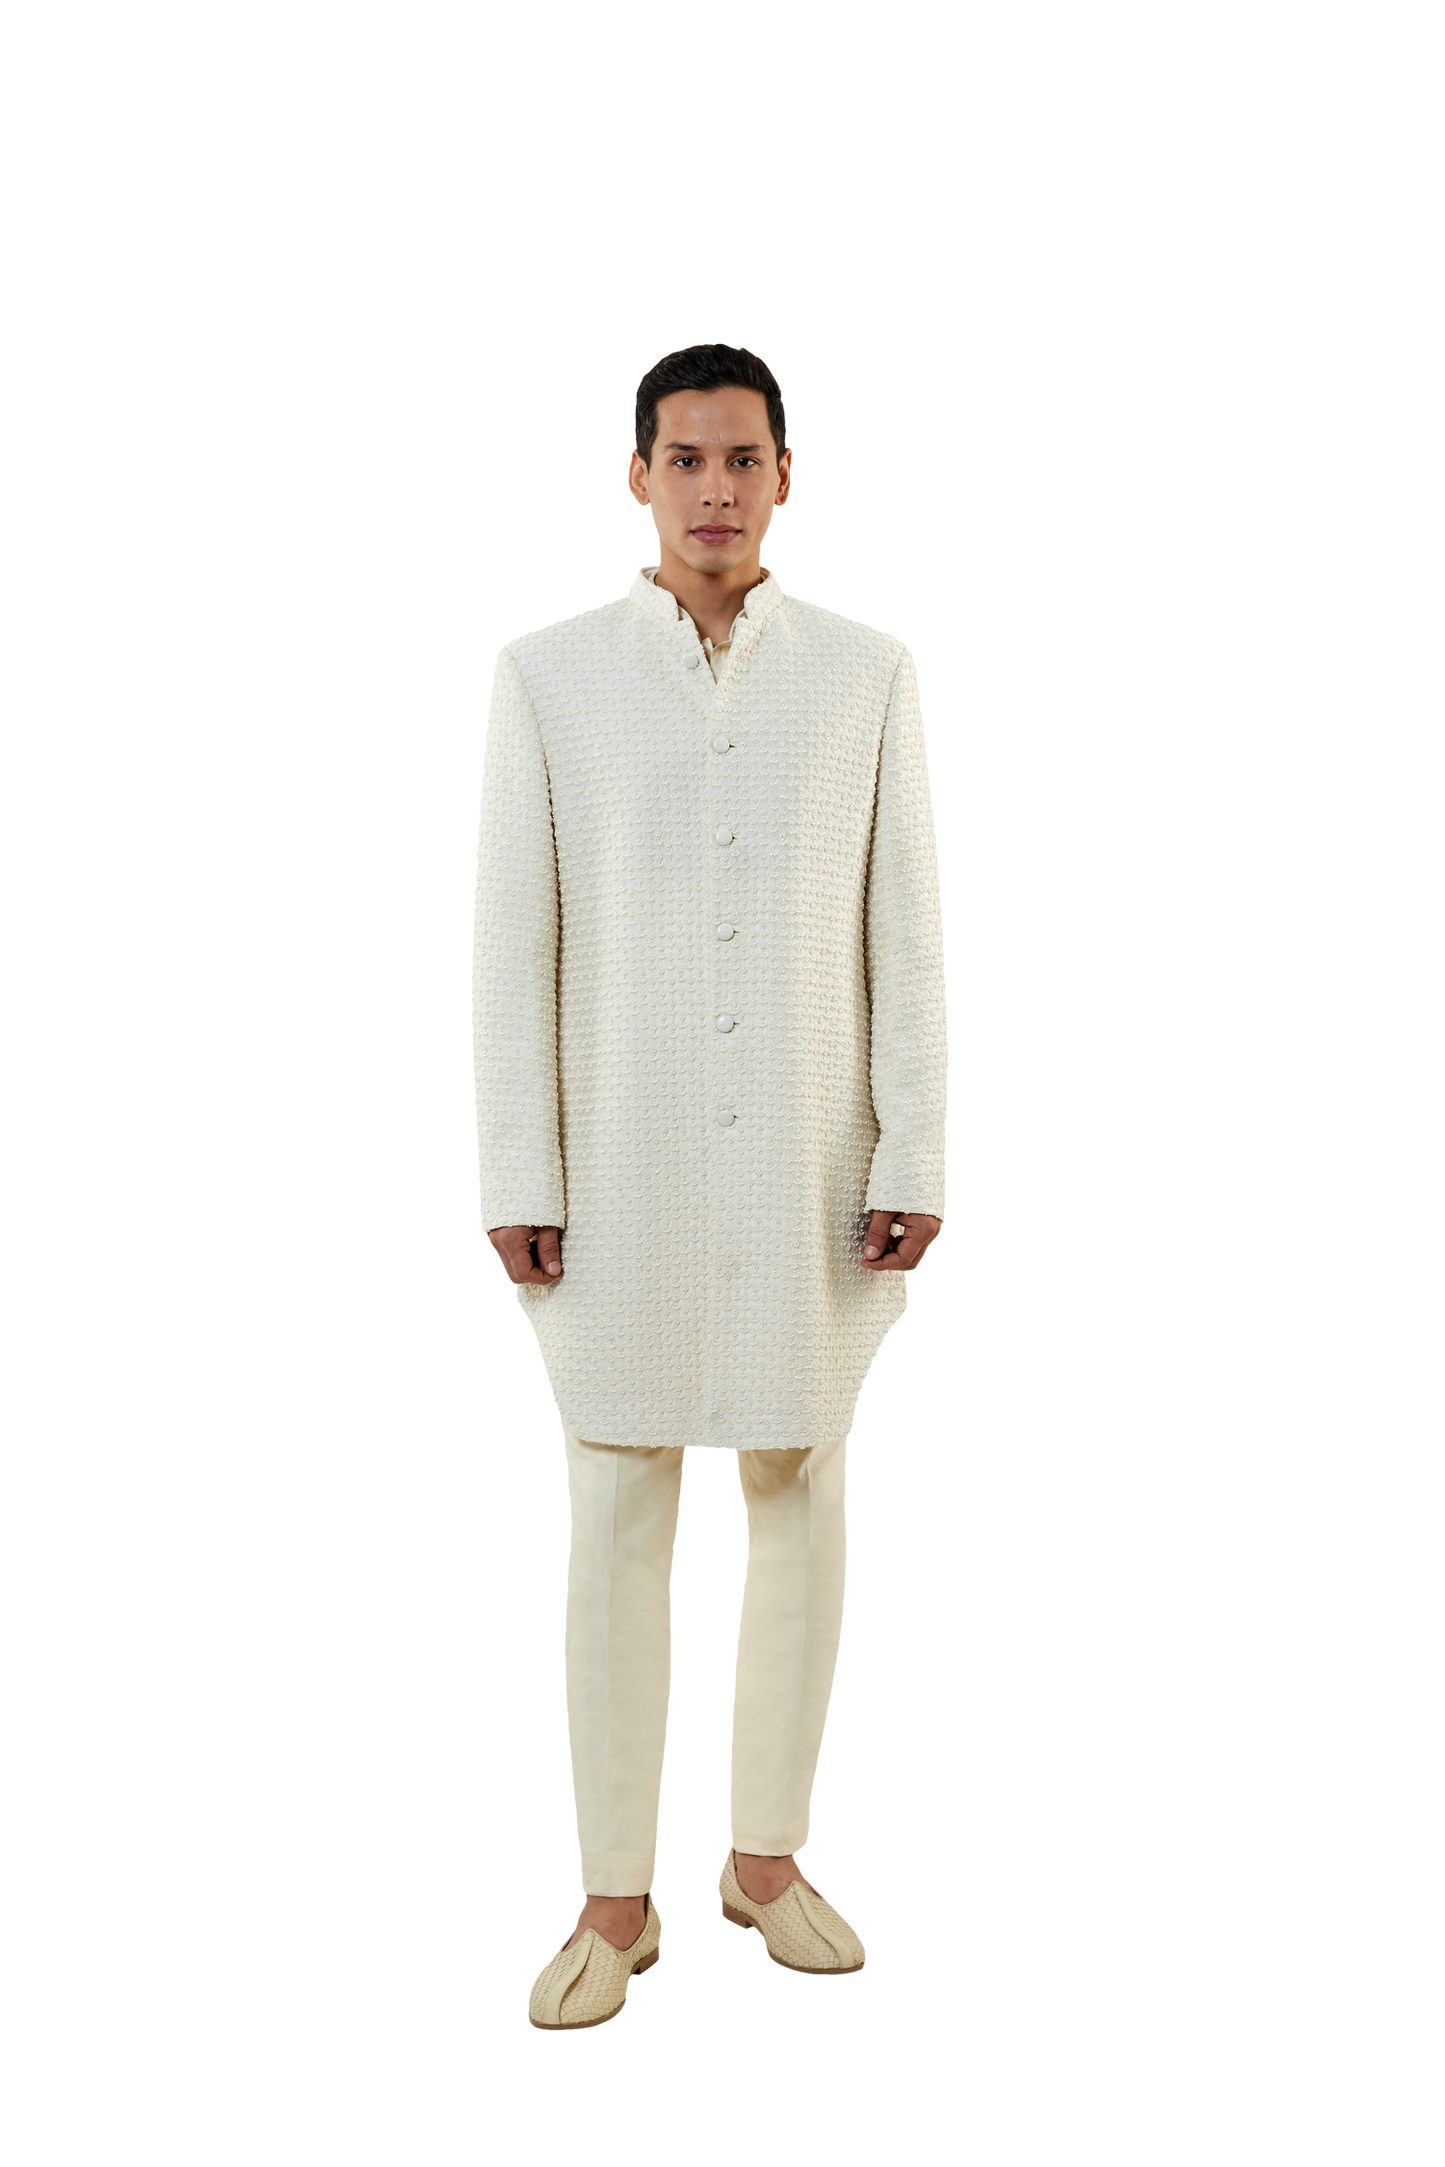 MC 520 White Short Sherwani With Pants at MashalCouture.com